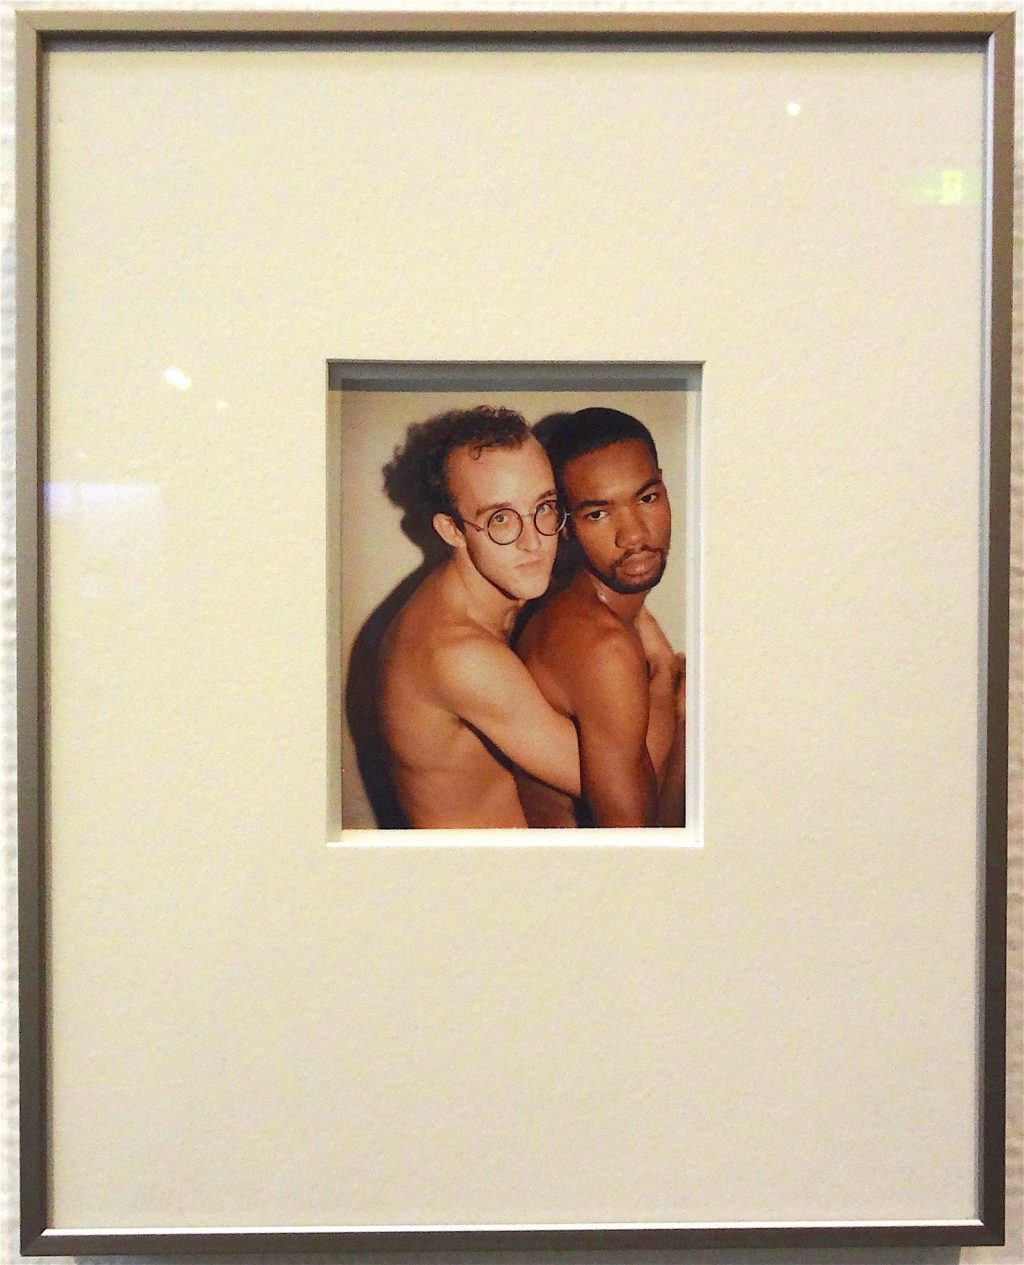 Andy Warhol „Keith Haring and Juan“ アンディ・ウォーホル 「キース・ヘリングとジュアン」no date @ 横浜美術館 2012年